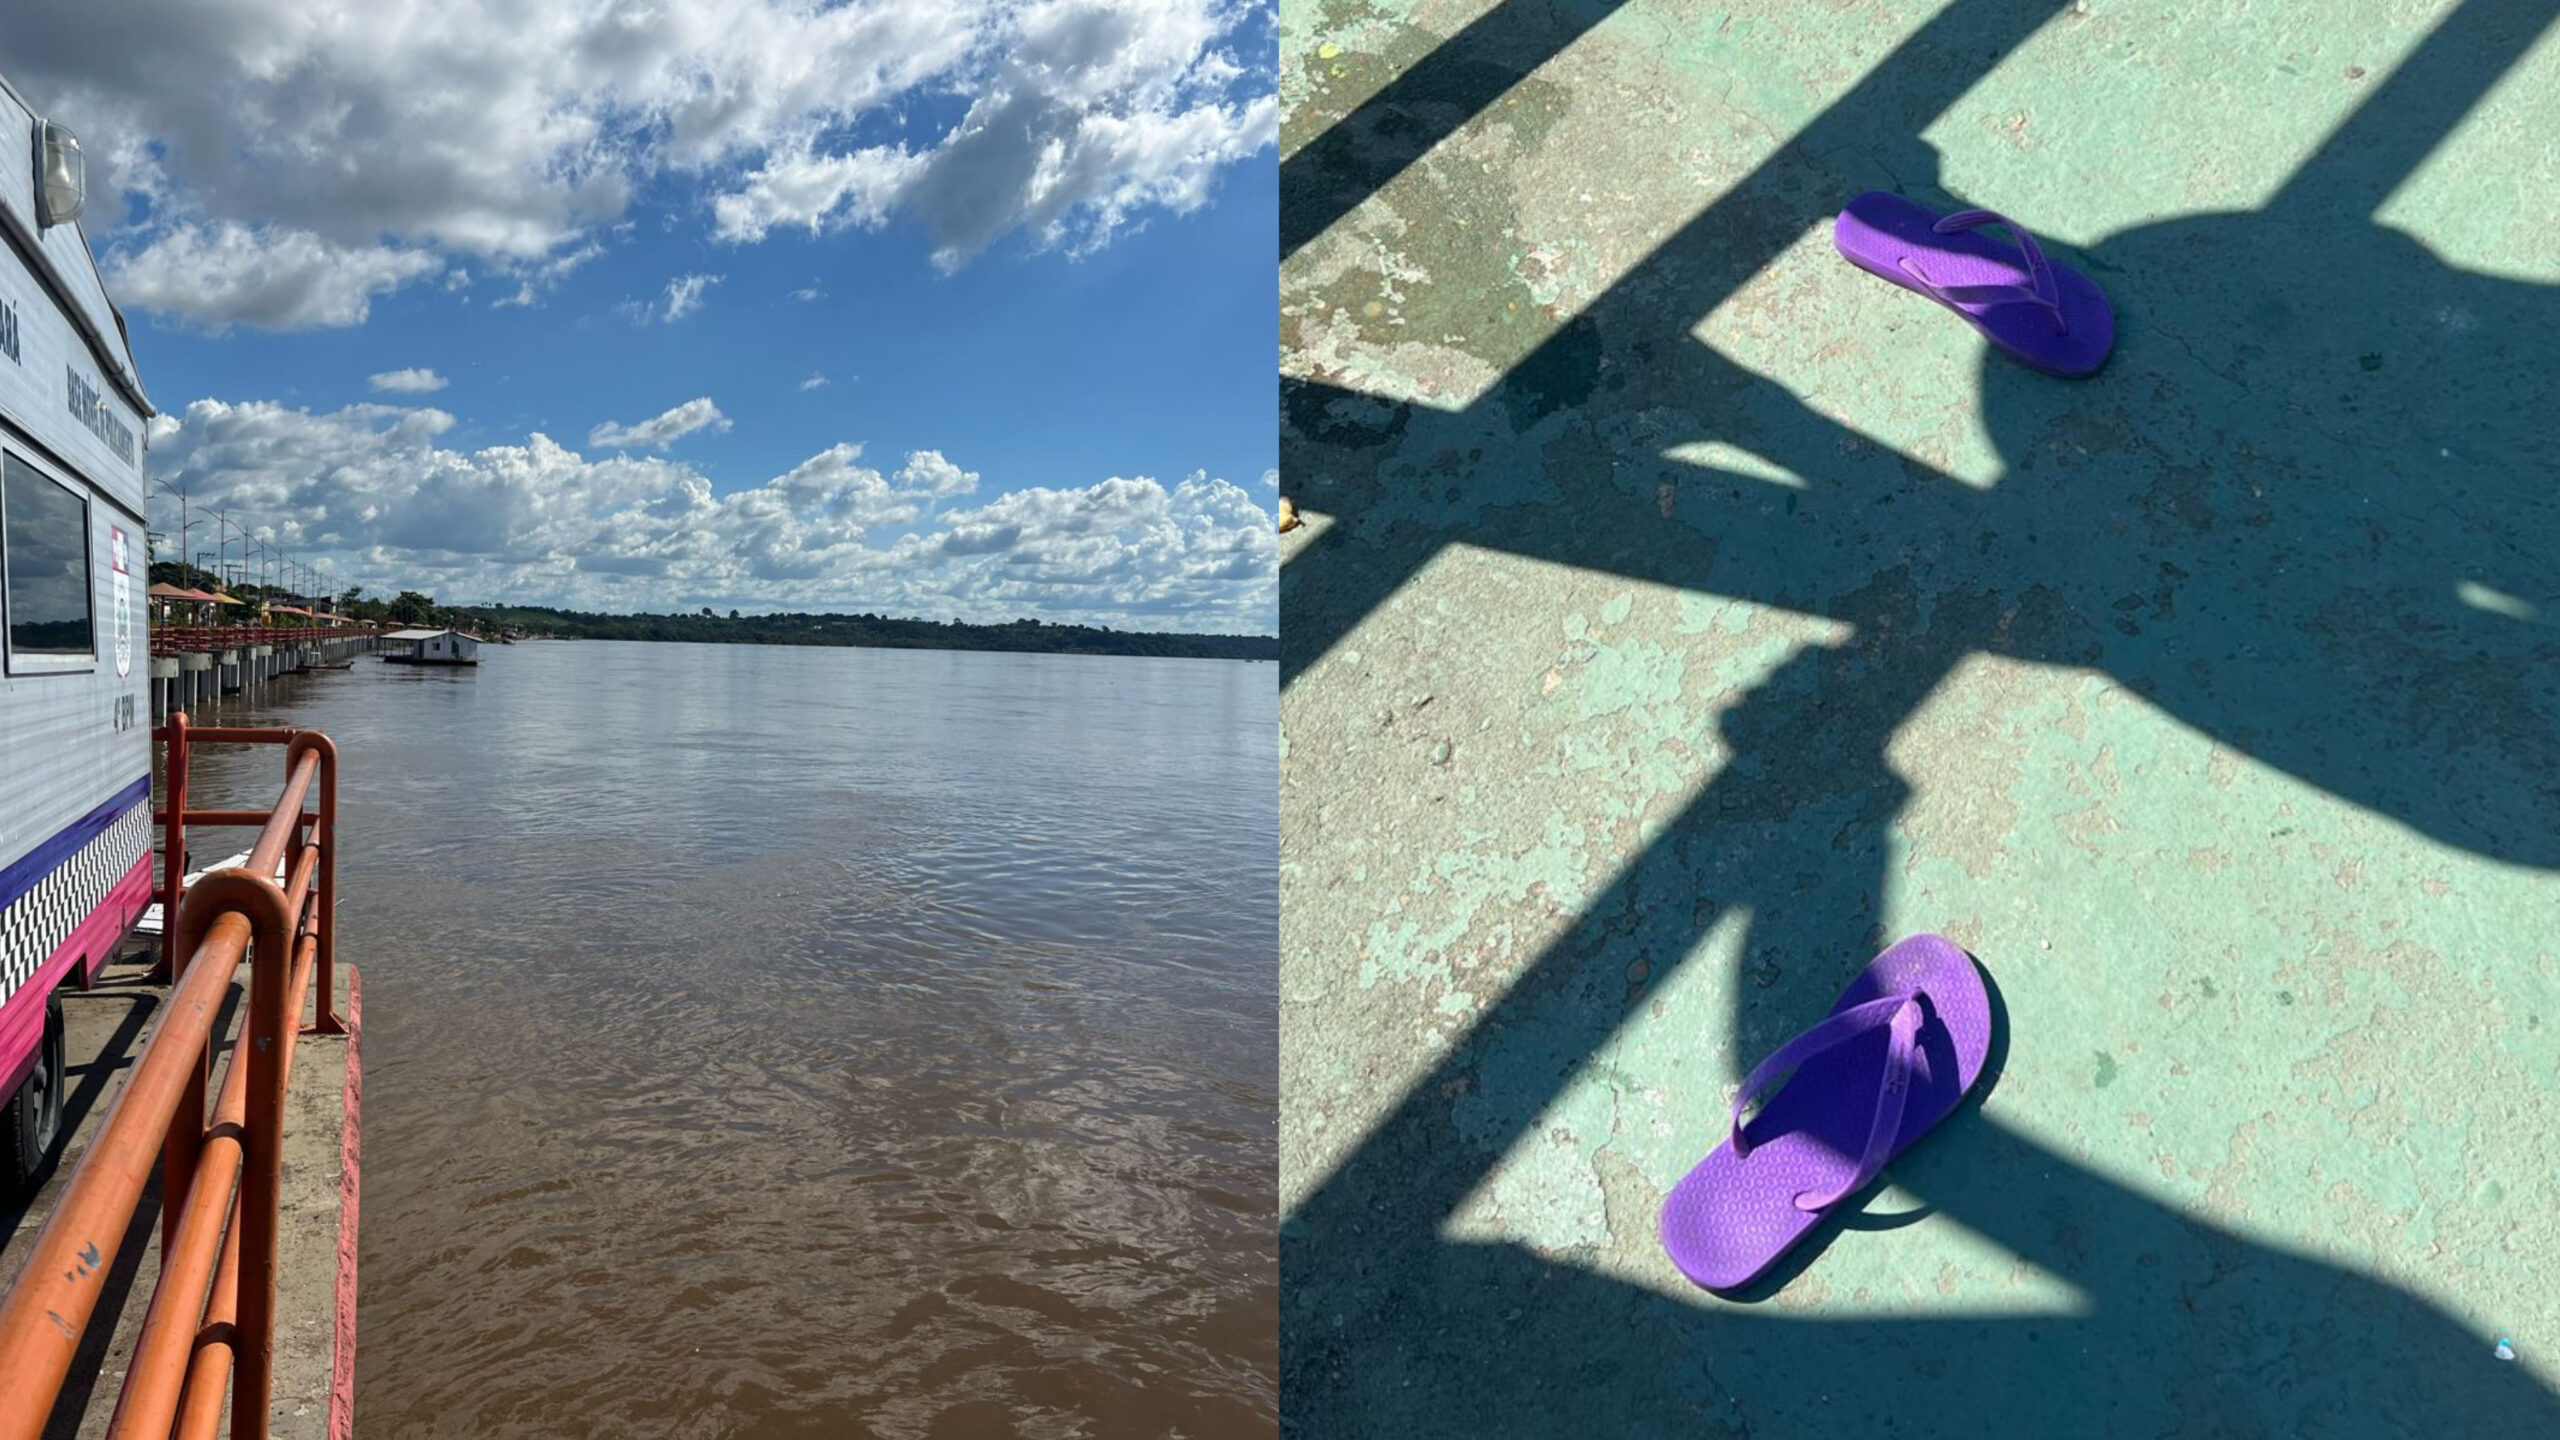 Adolescente de 14 anos desaparece nas águas do Rio Tocantins após pular da Orla de Marabá